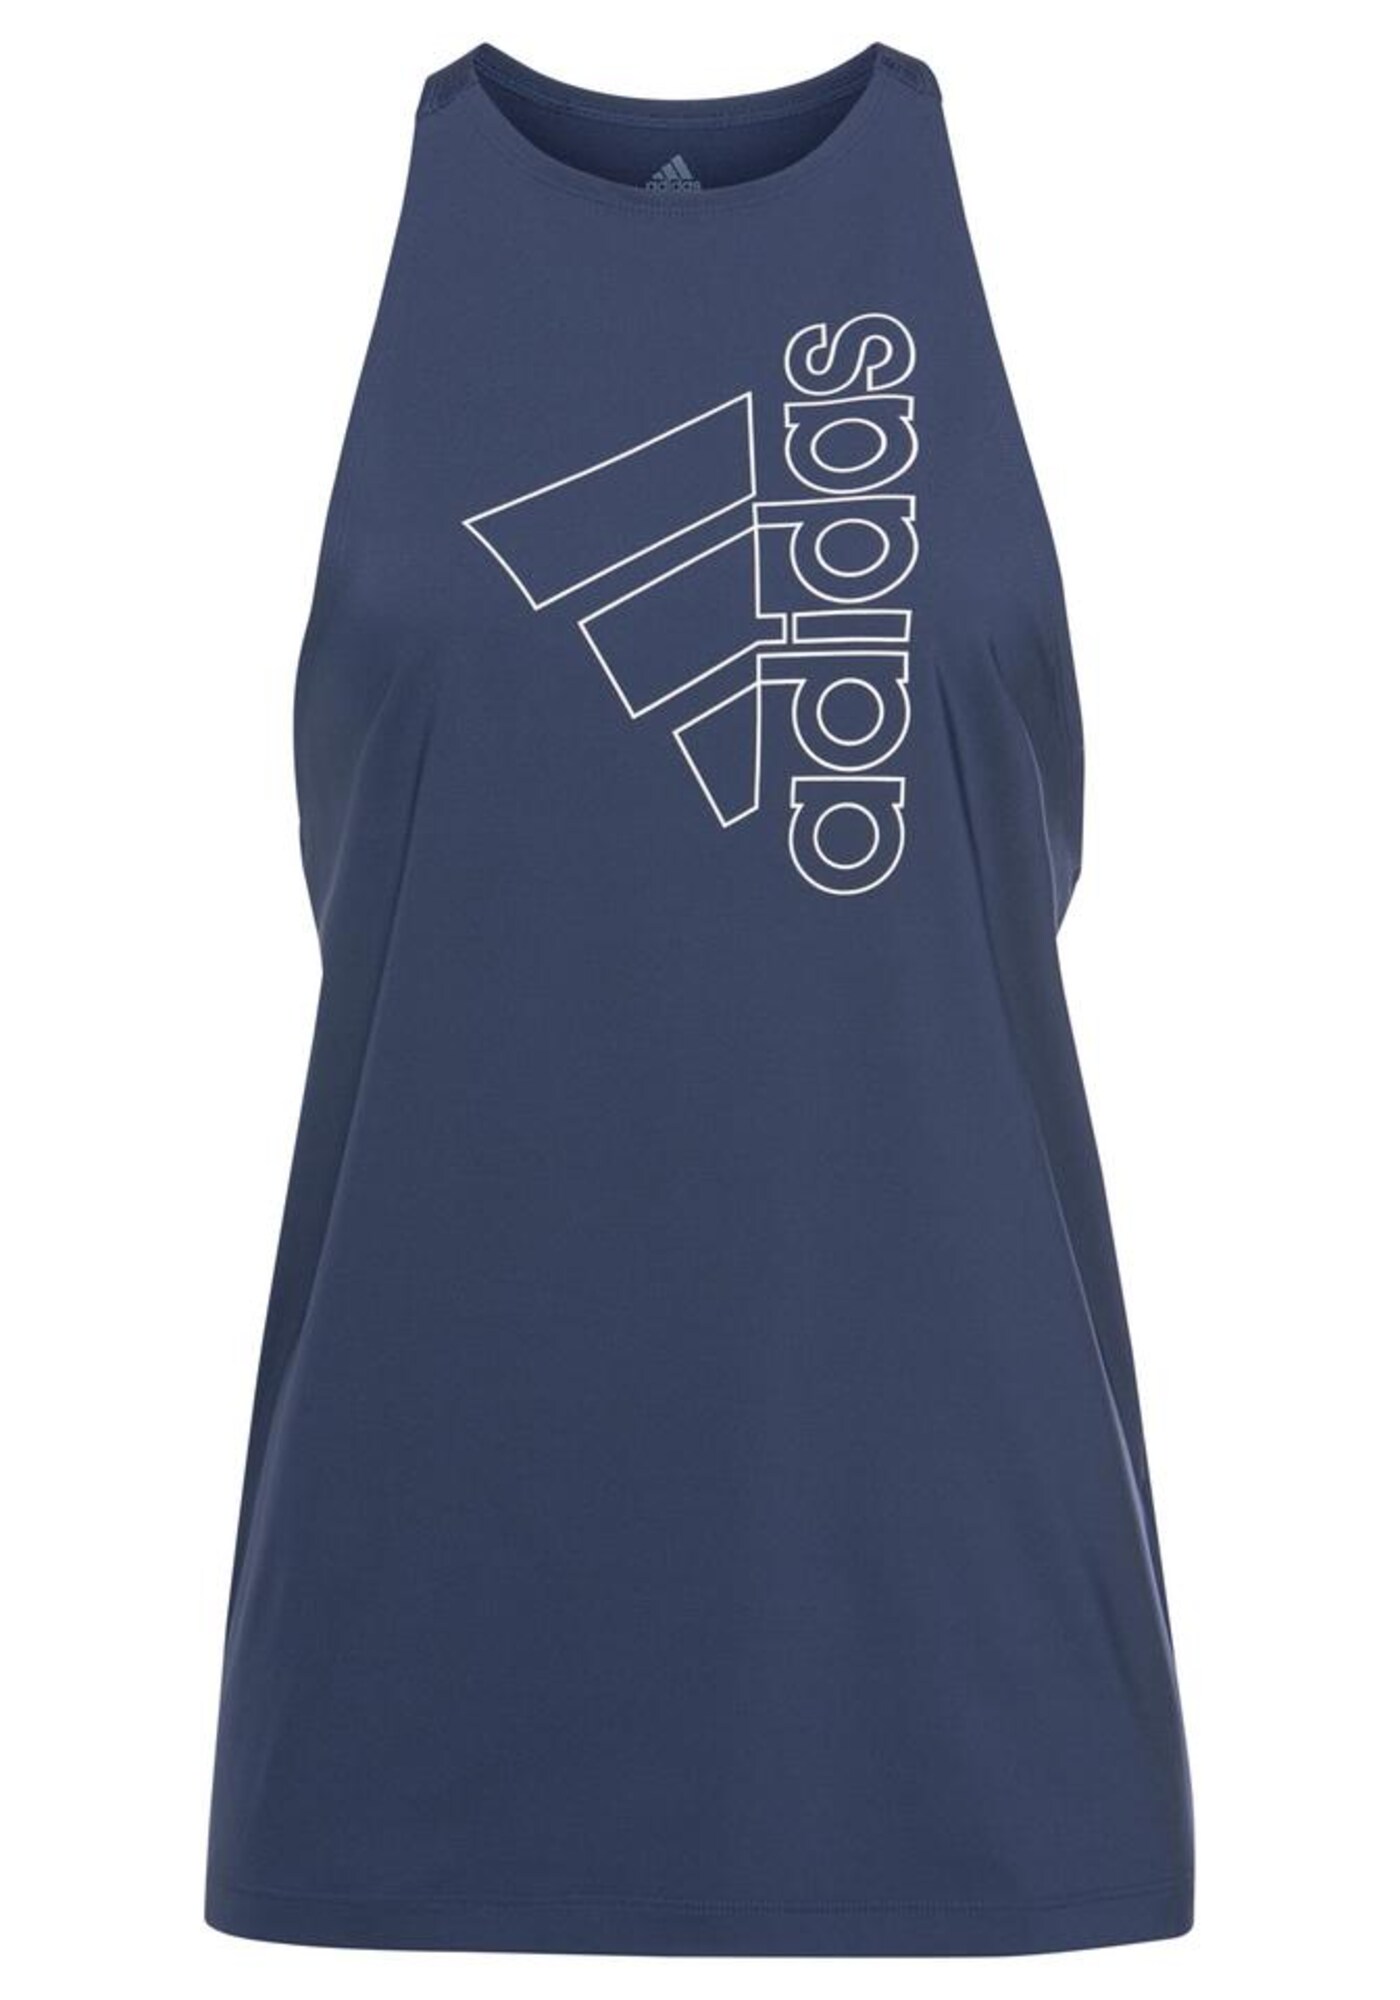 ADIDAS PERFORMANCE Sportiniai marškinėliai be rankovių  tamsiai mėlyna jūros spalva